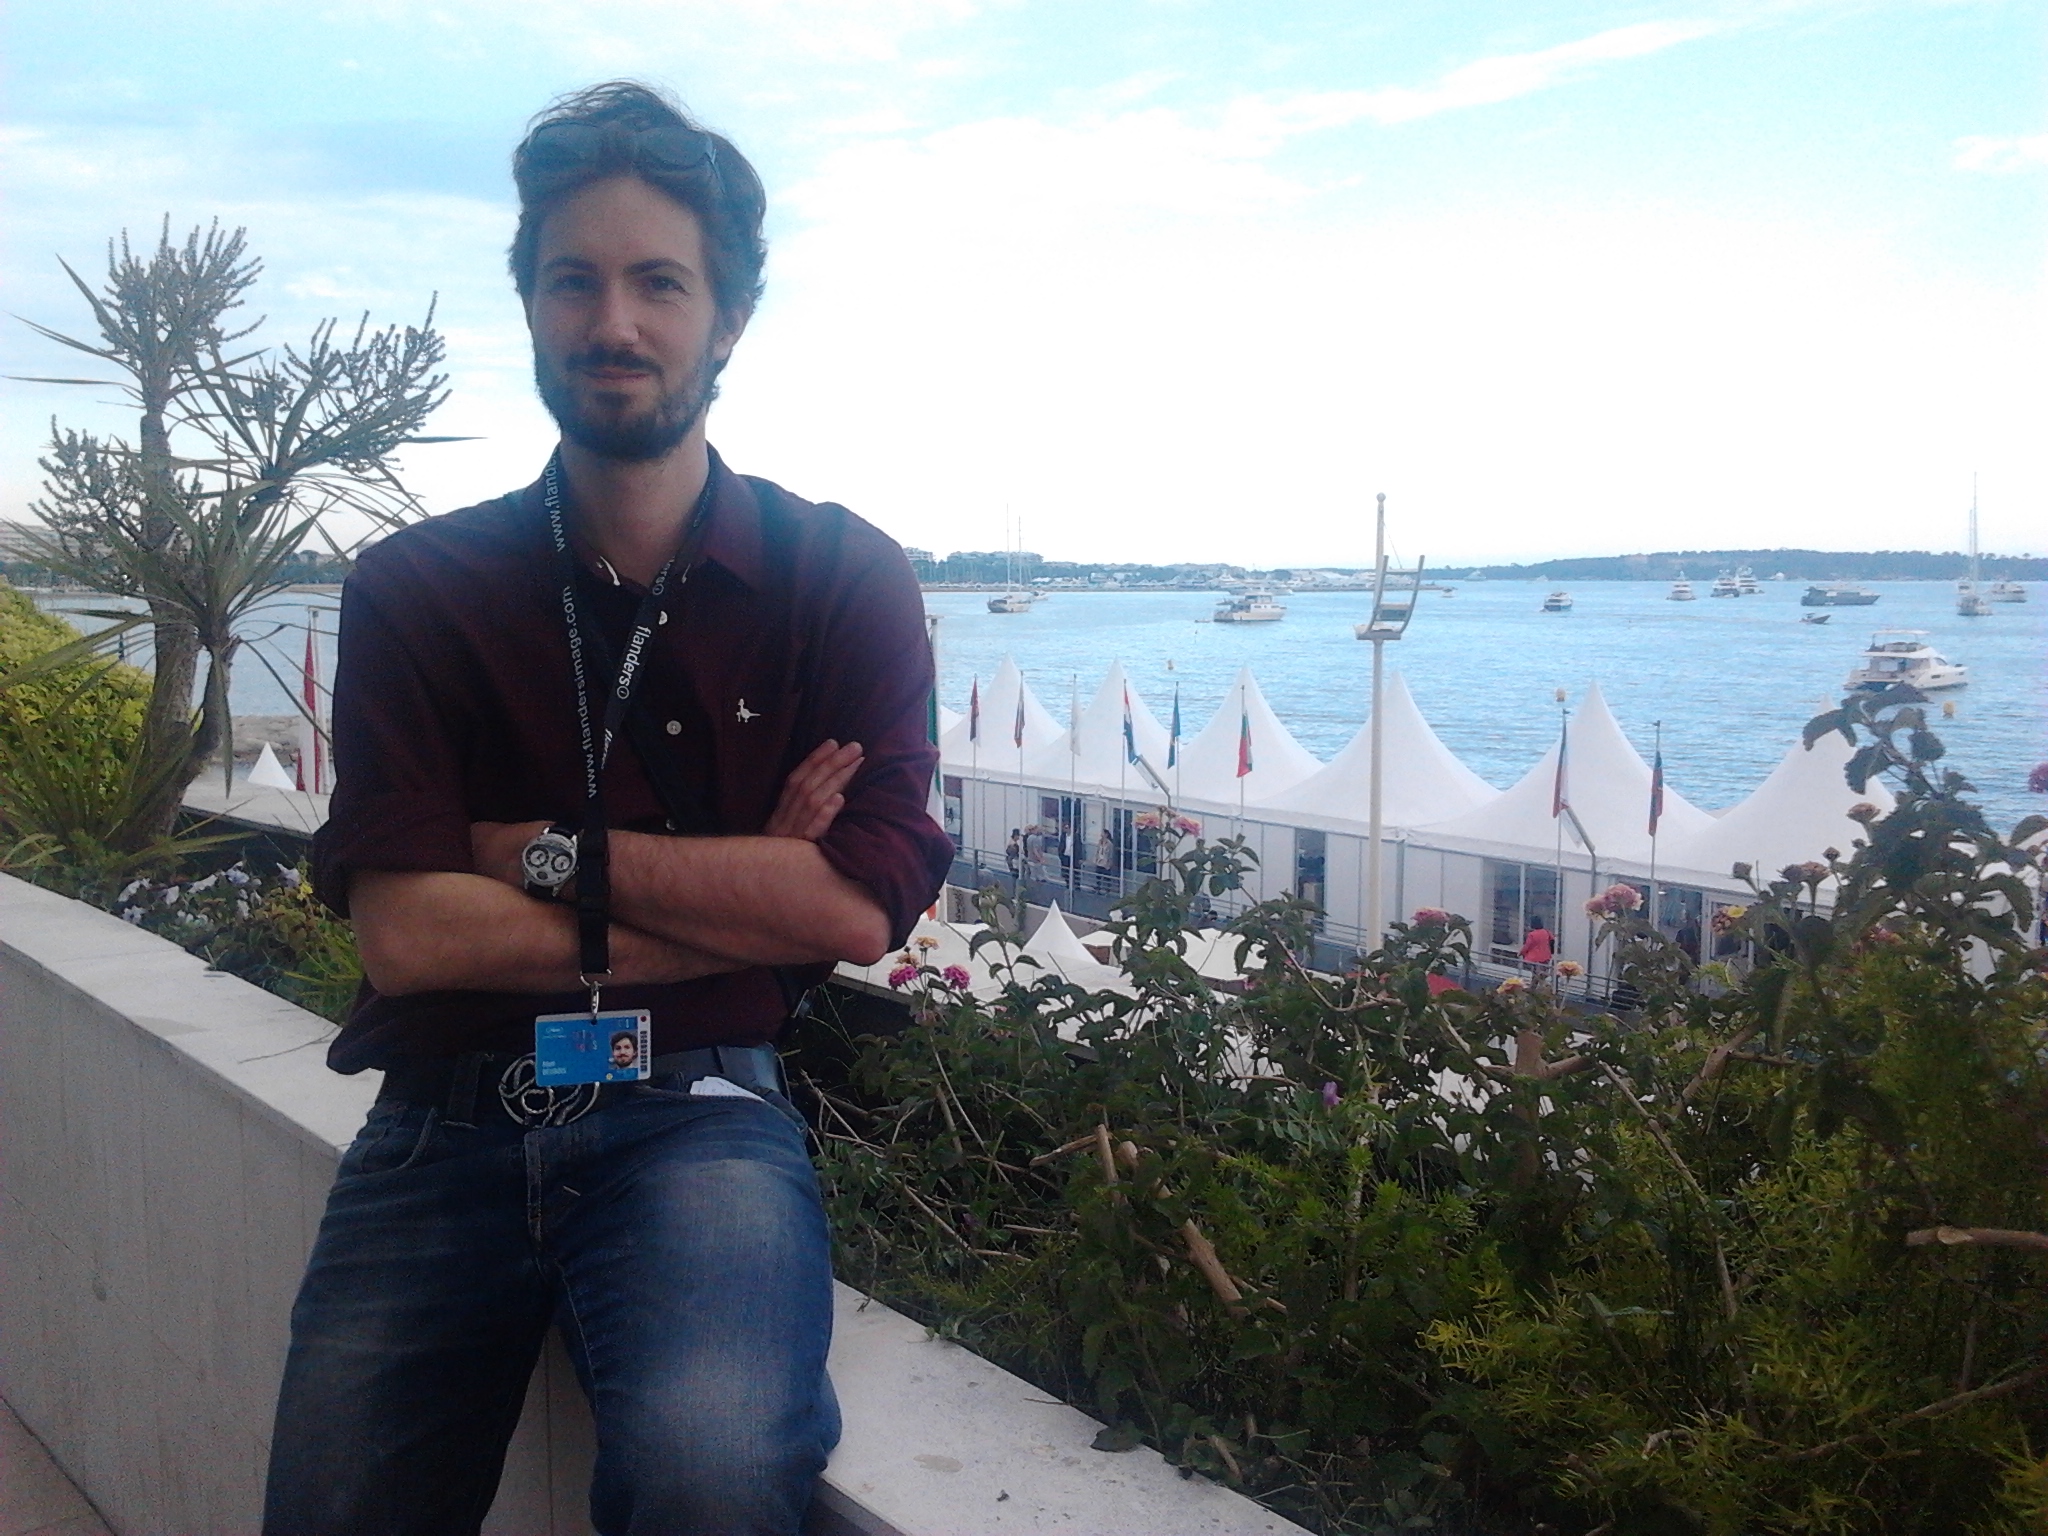 Attending Cannes Film Festival 2014.